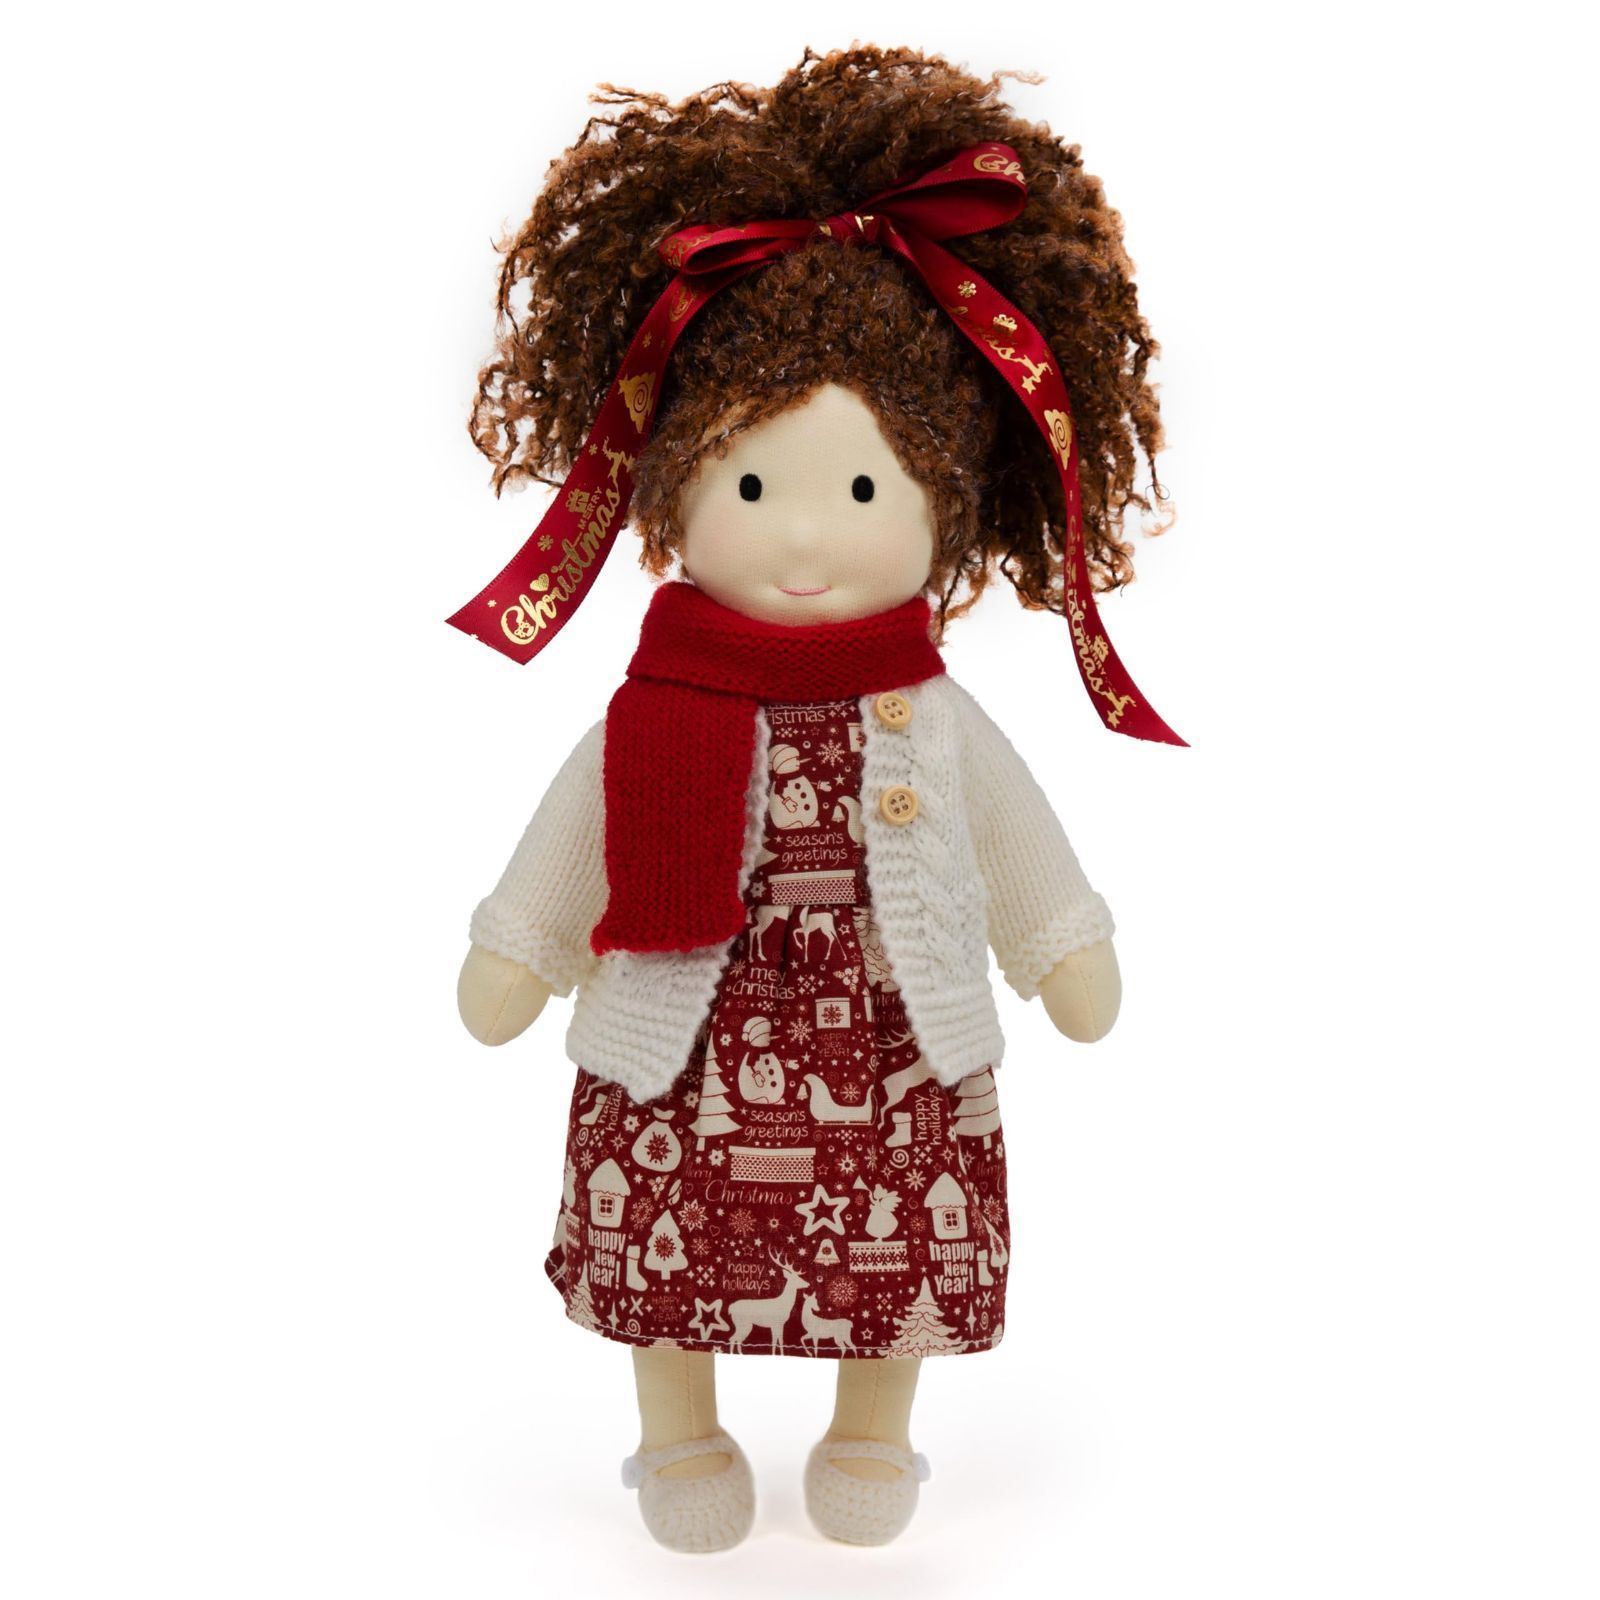 【新着商品】- Eva Doll 3cm 柔らかい Waldorf 女の子 手作り人形 かわいい ウォルドルフ人形 ぬいぐるみ  BlissfulPixie 子供たちに最適な人形